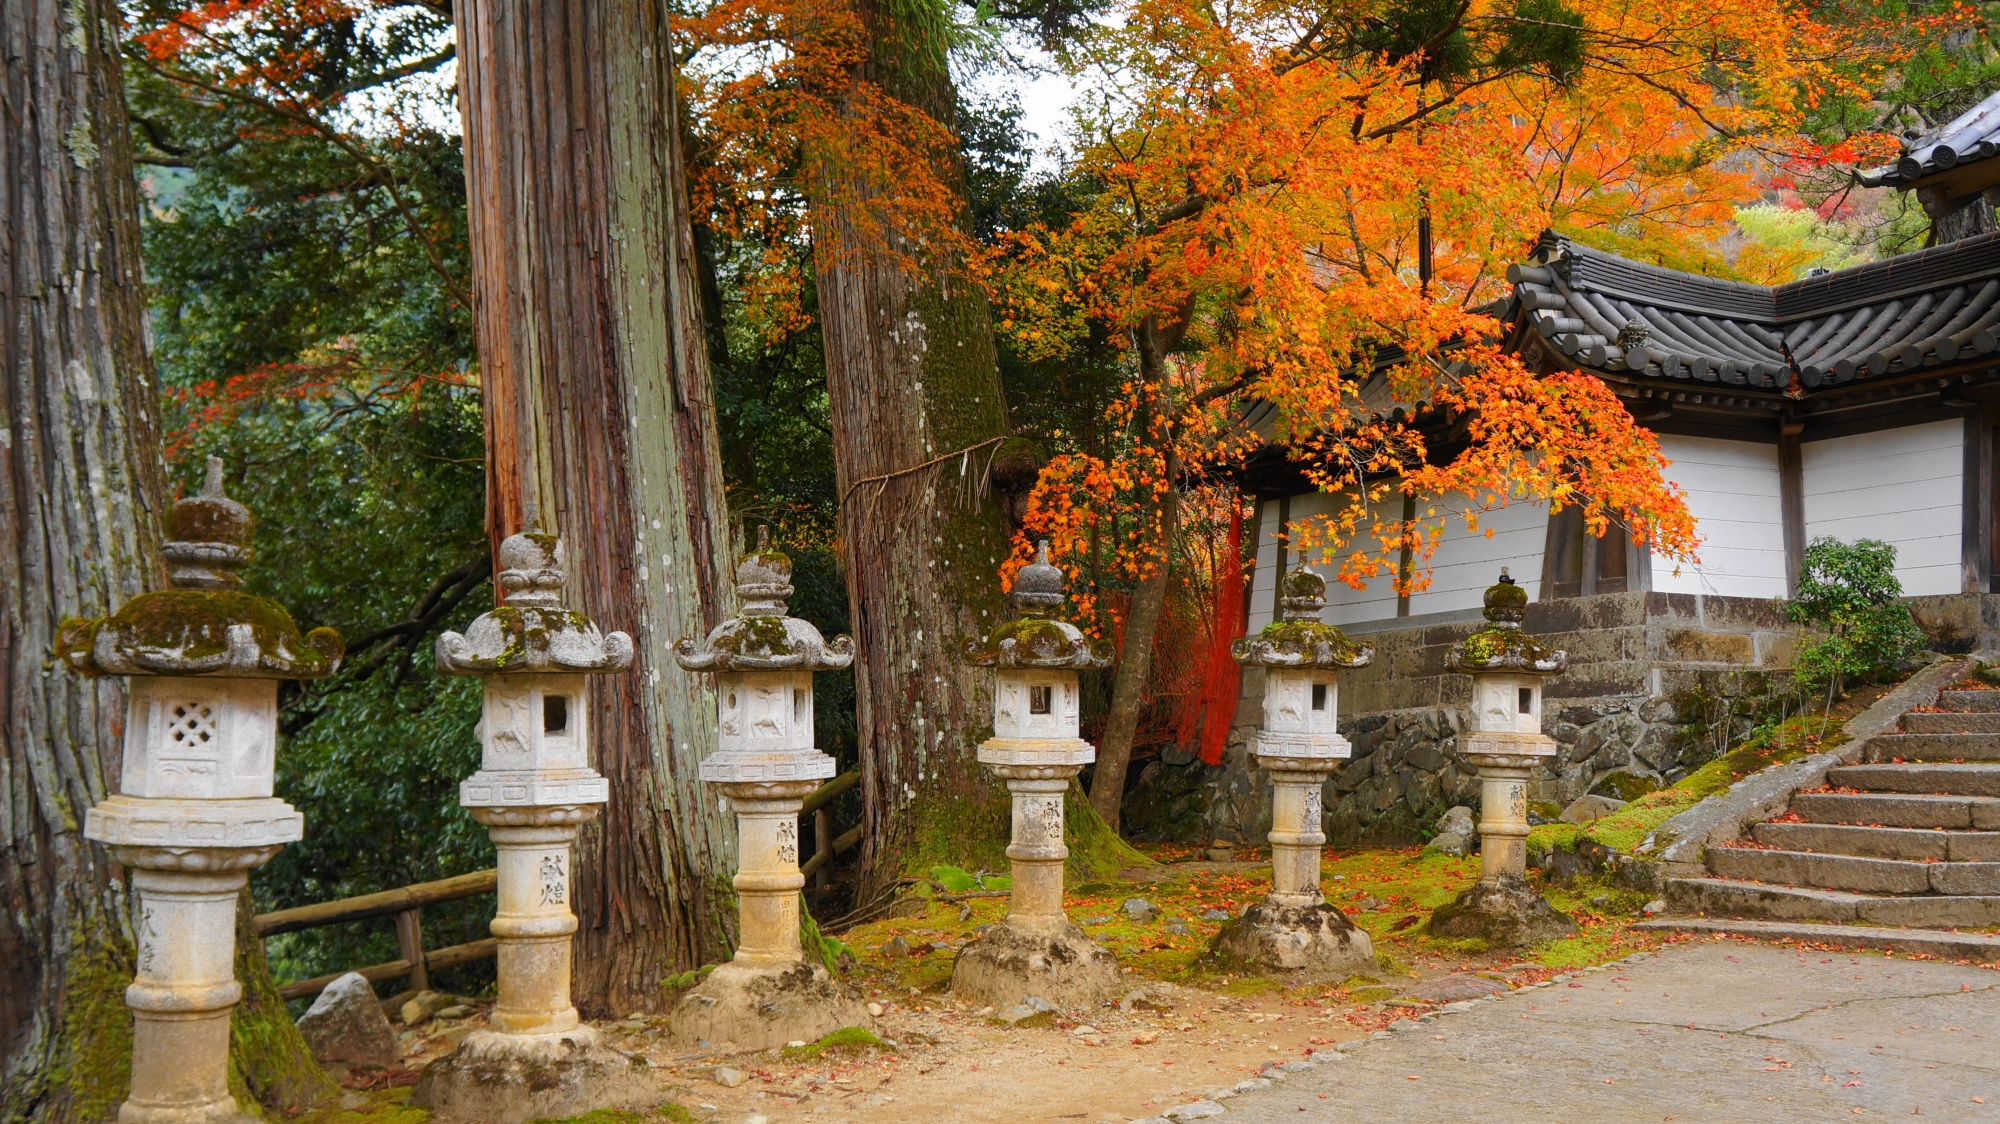 西明寺の表門前の立ち並ぶ灯籠に降り注ぐ紅葉